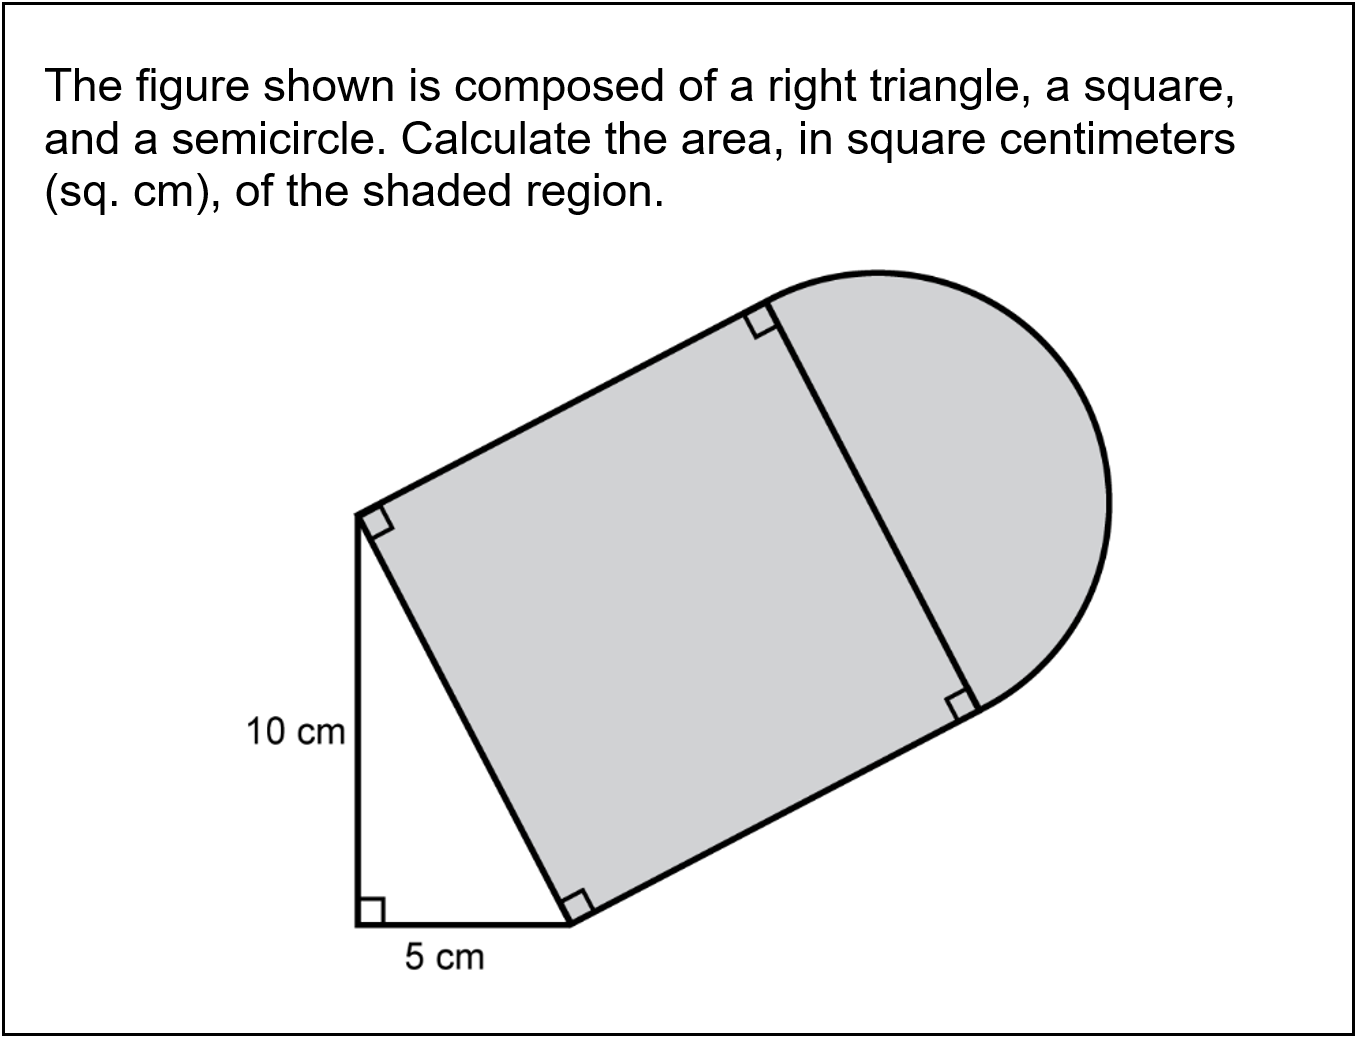 an image of a problem assigned by a math teacher